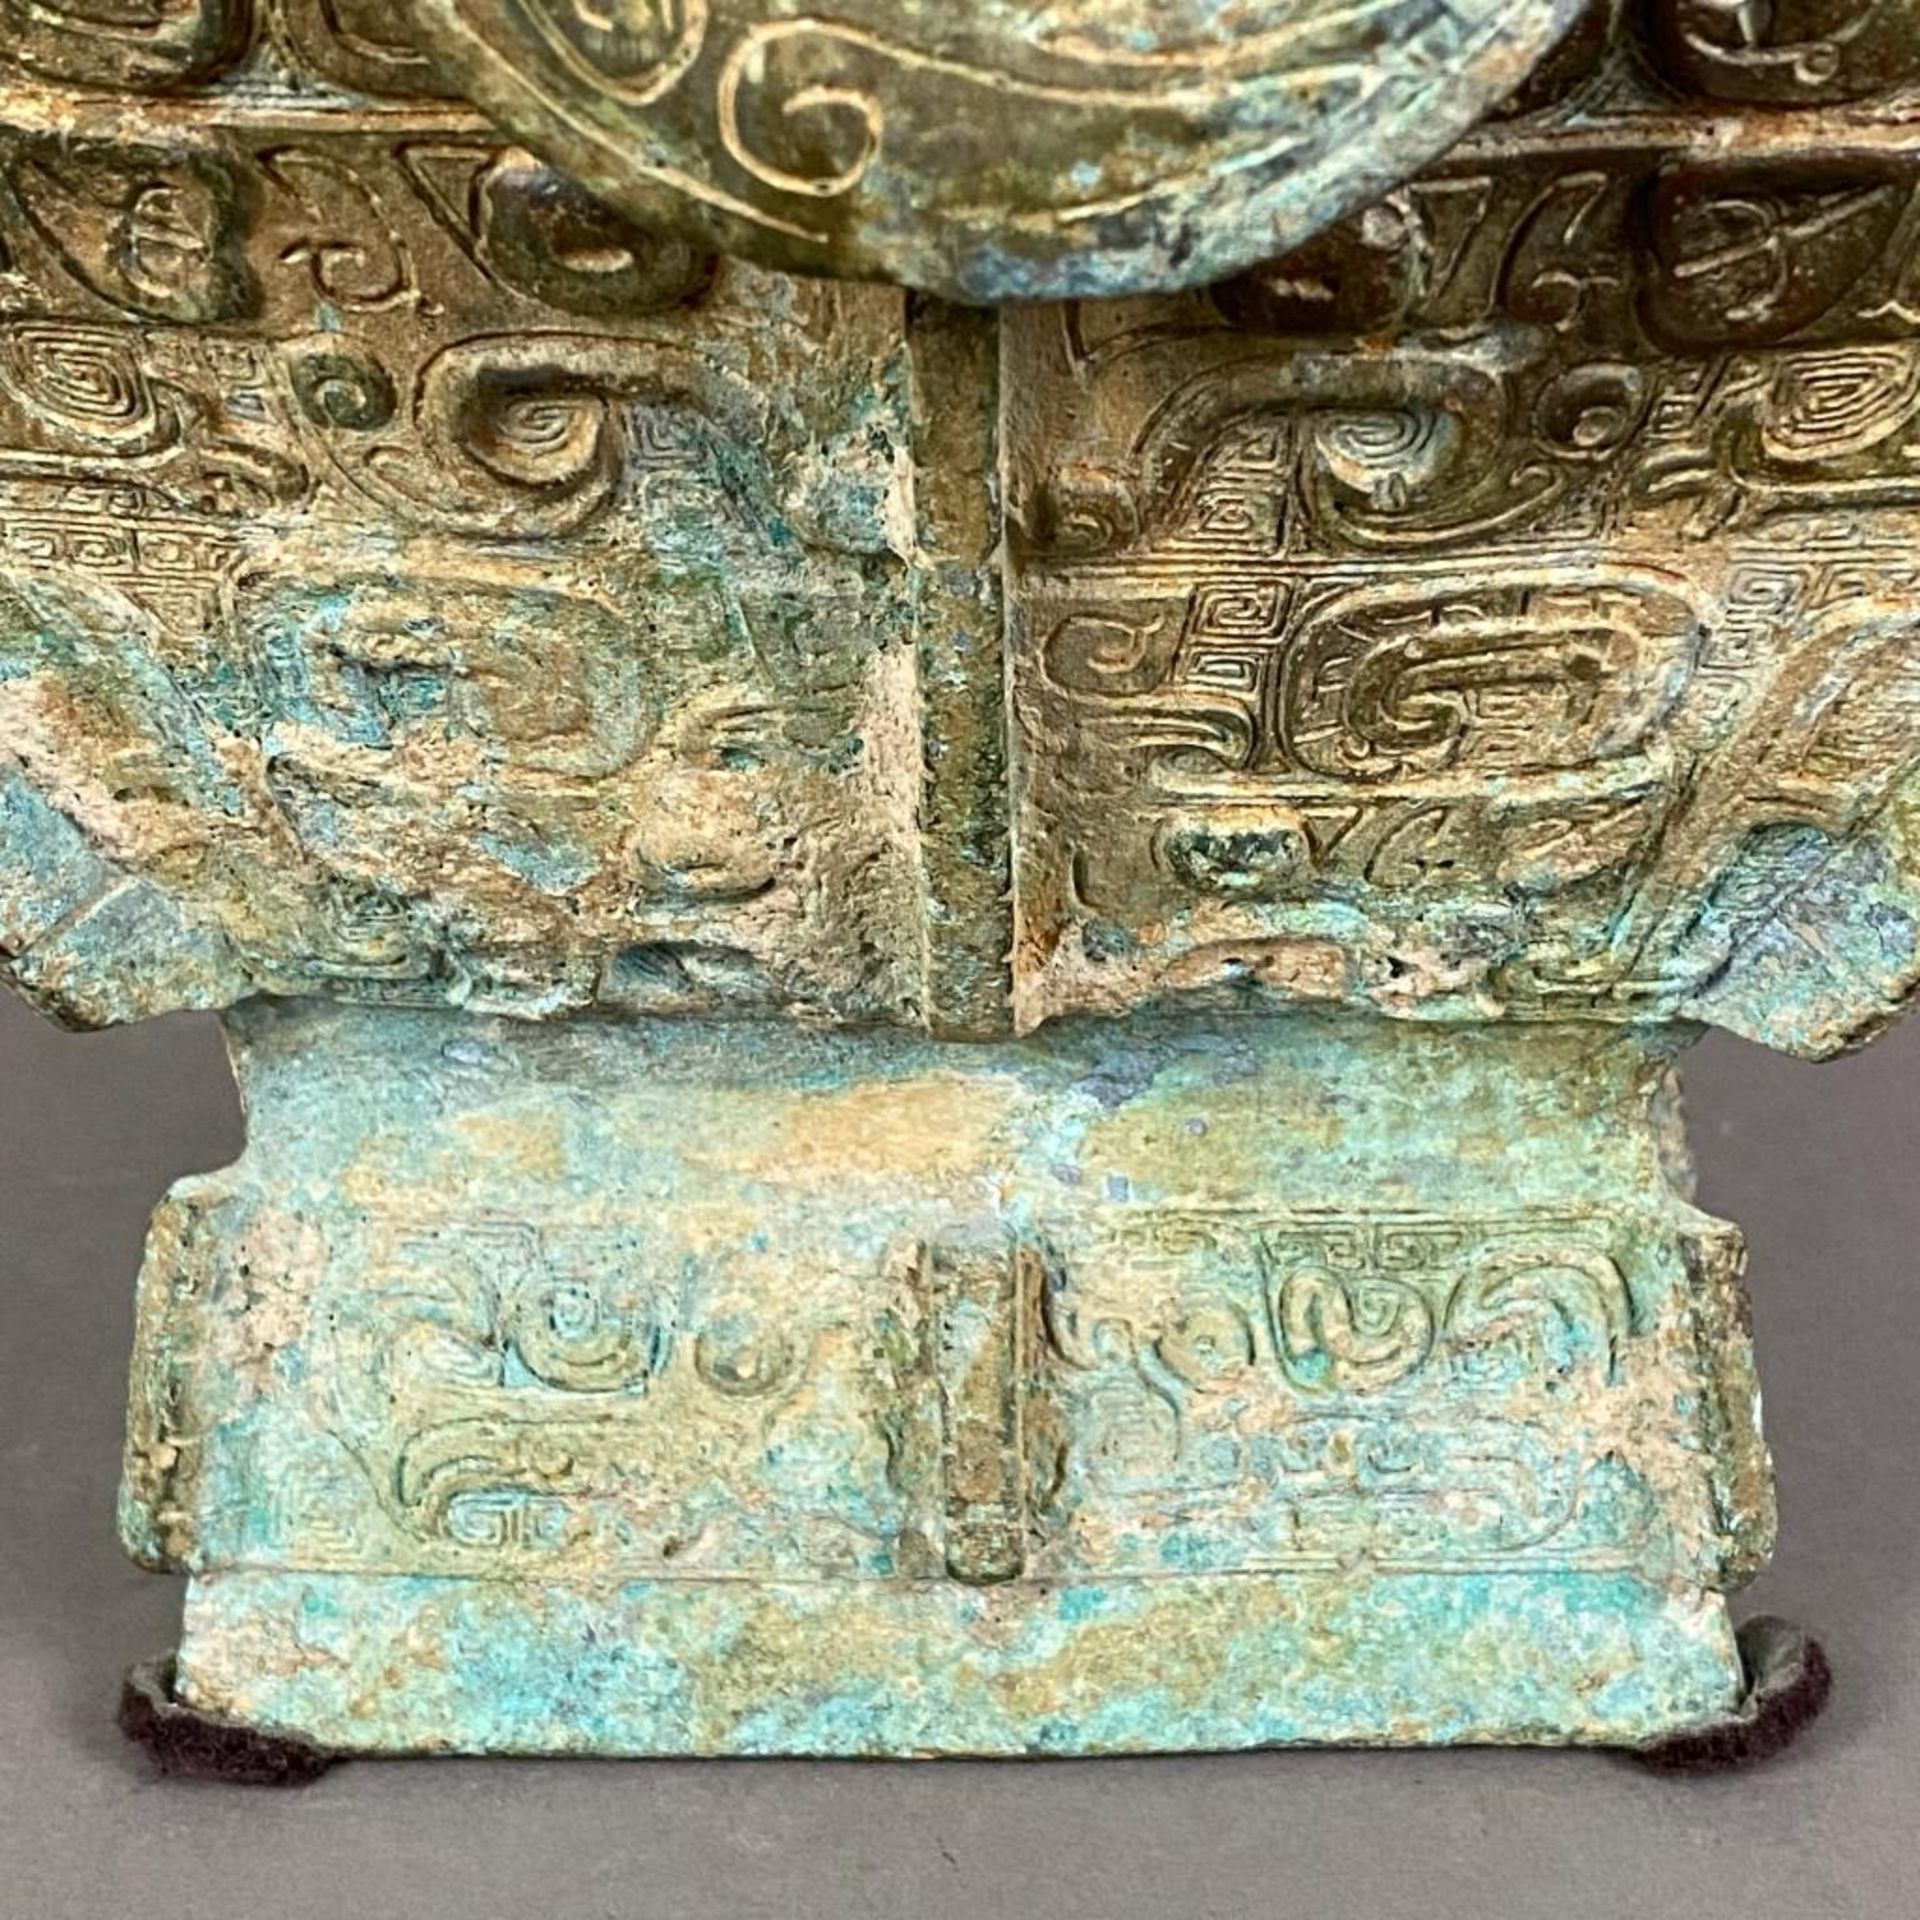 Fanghu-Vase im archaischen Stil - China, grün-braun patinierte Bronze, vierkantige gebauchte Form a - Bild 8 aus 10